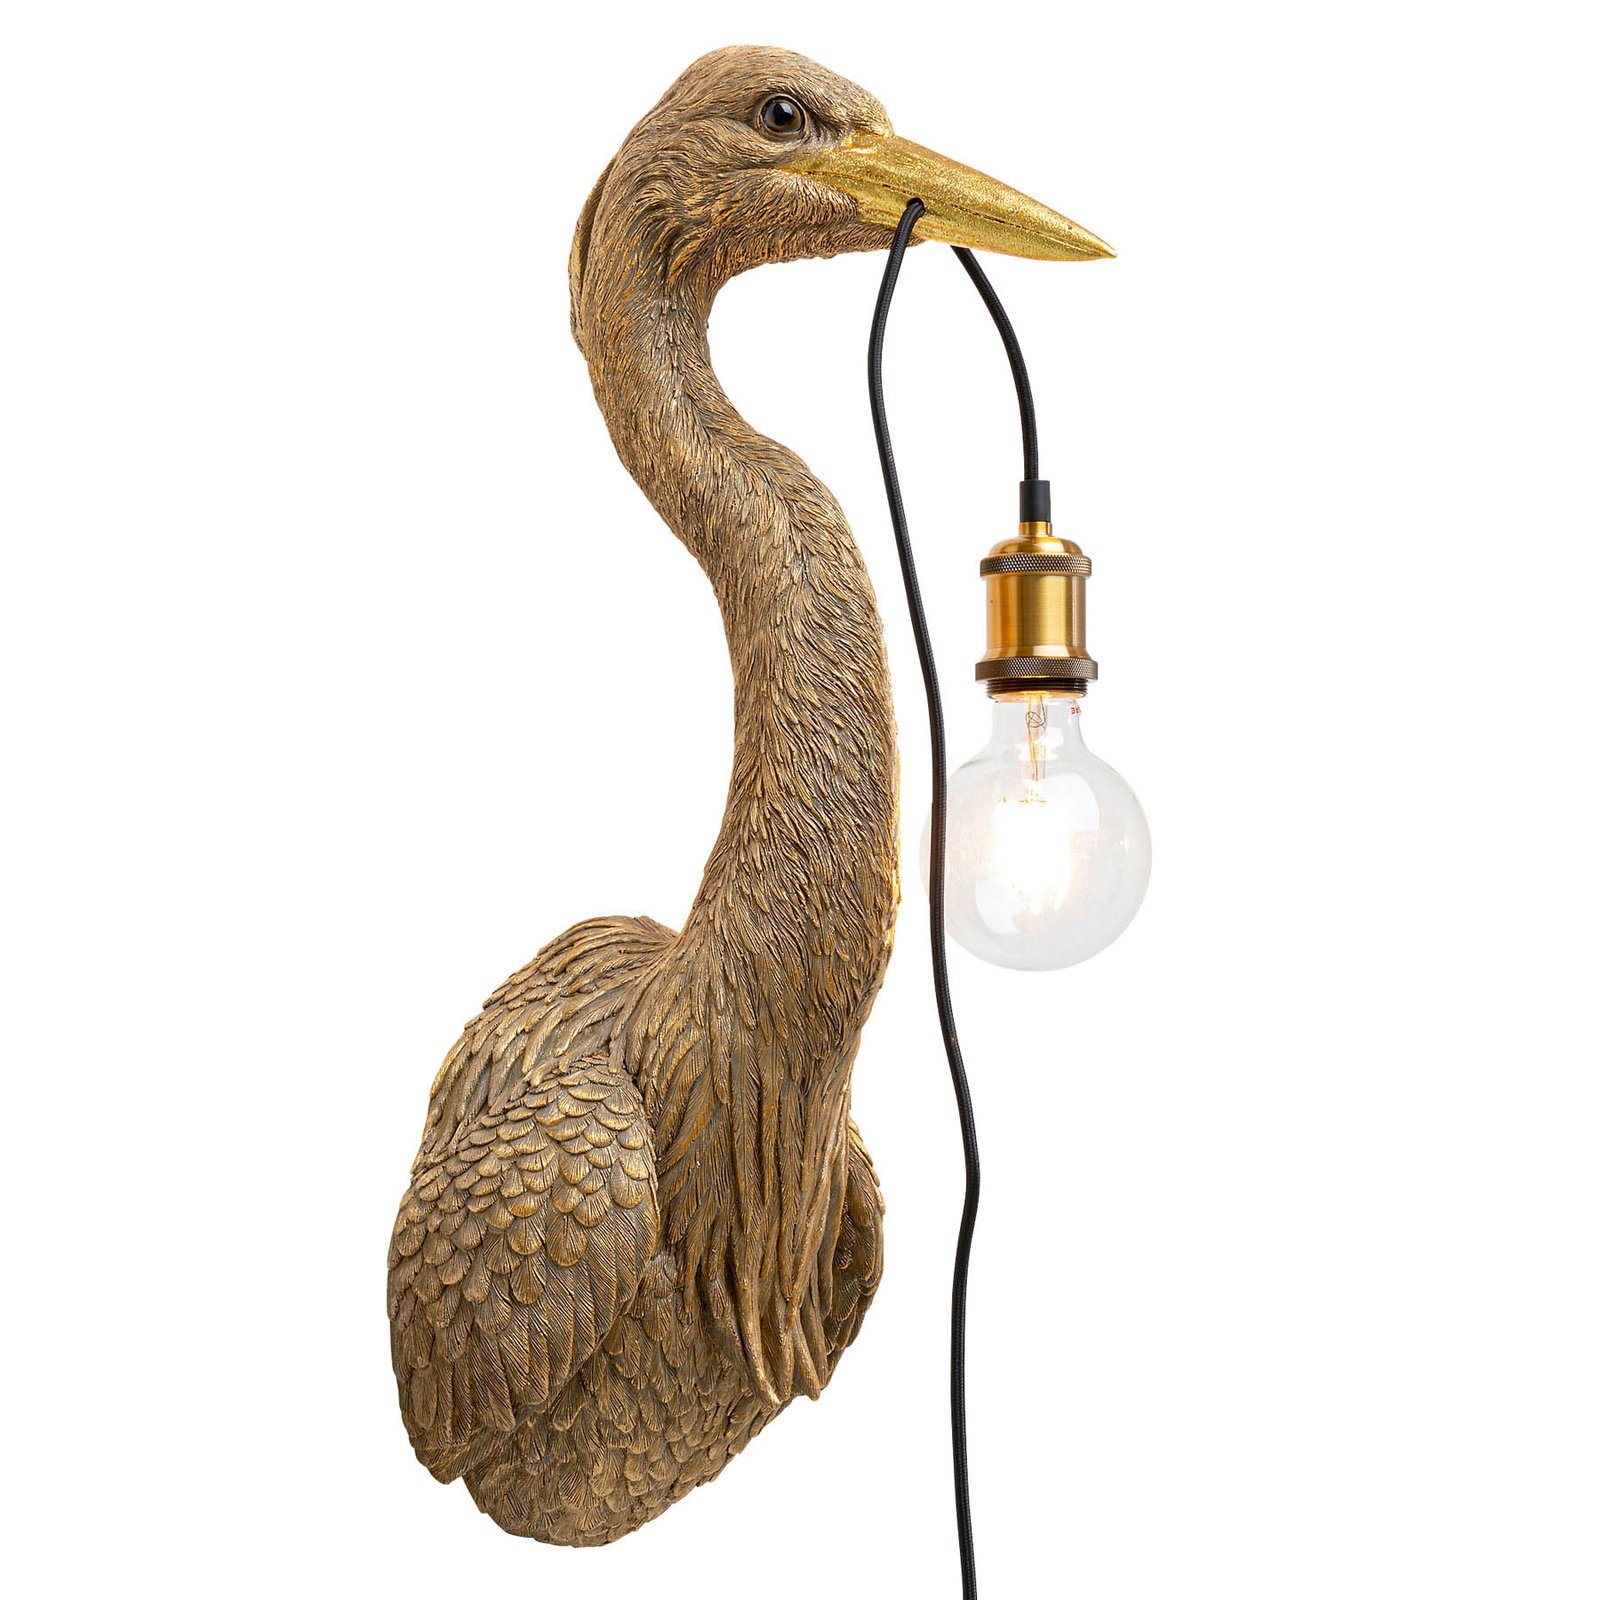 KARE Animal Heron wall light with plug